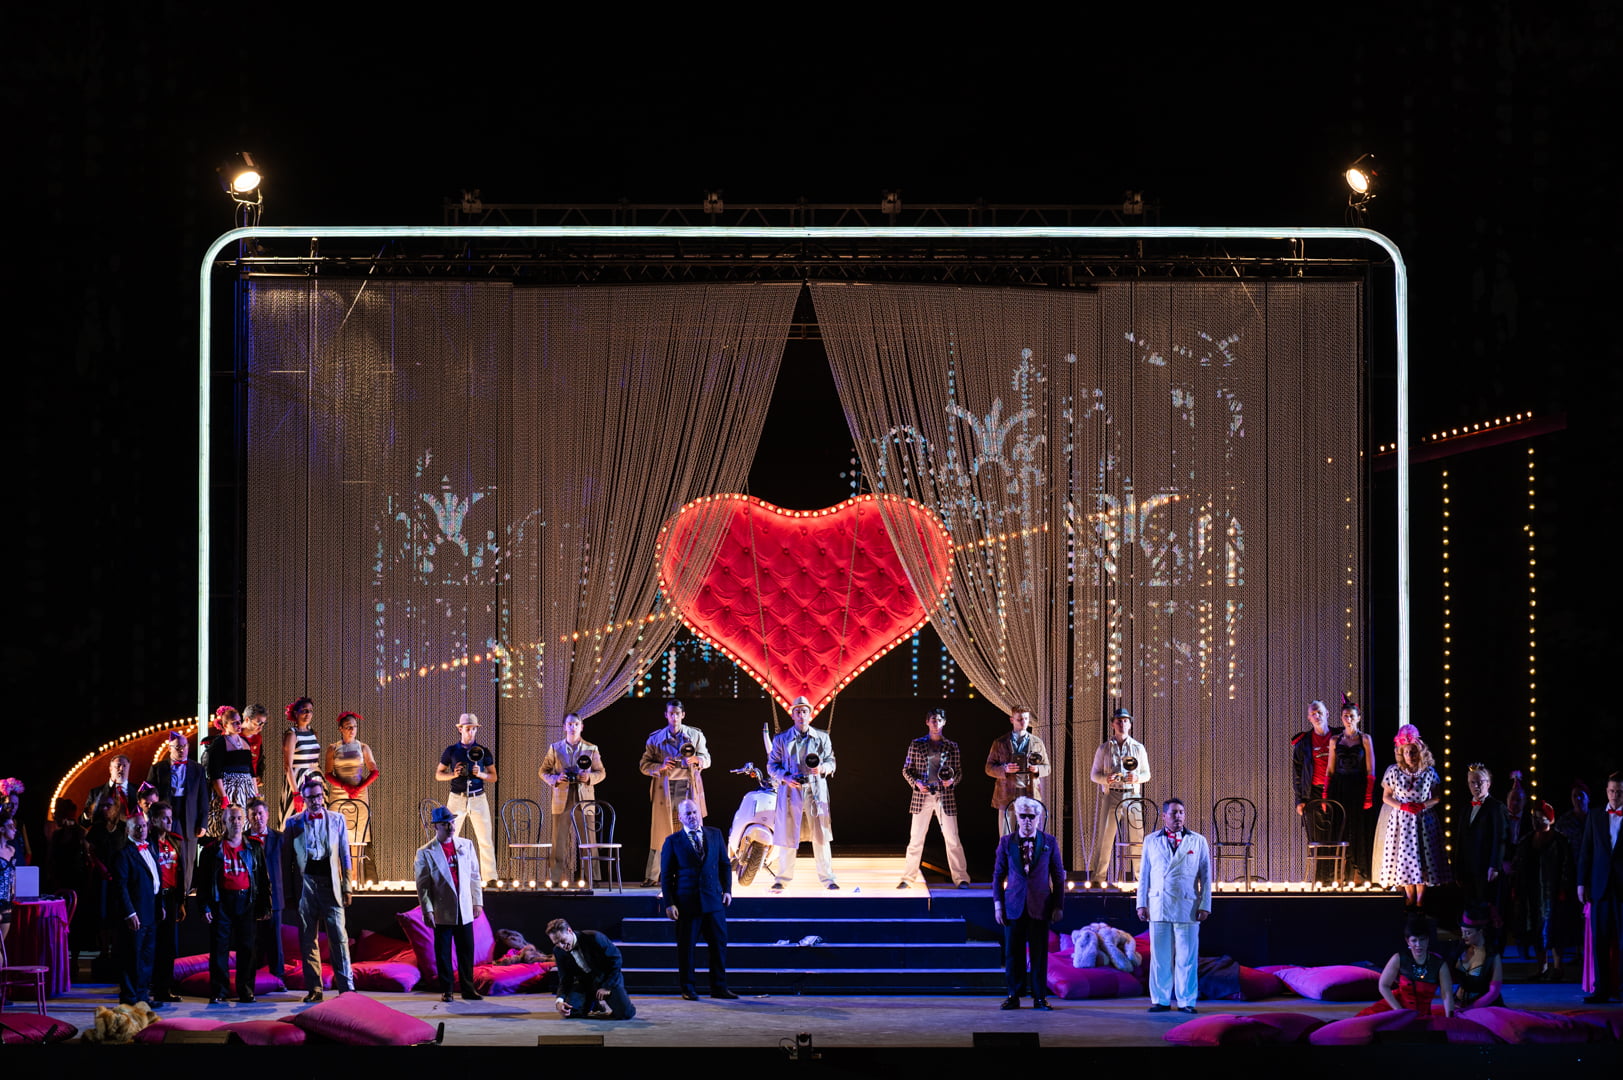 La Traviata - Teatro dell’Opera di Roma (italian)